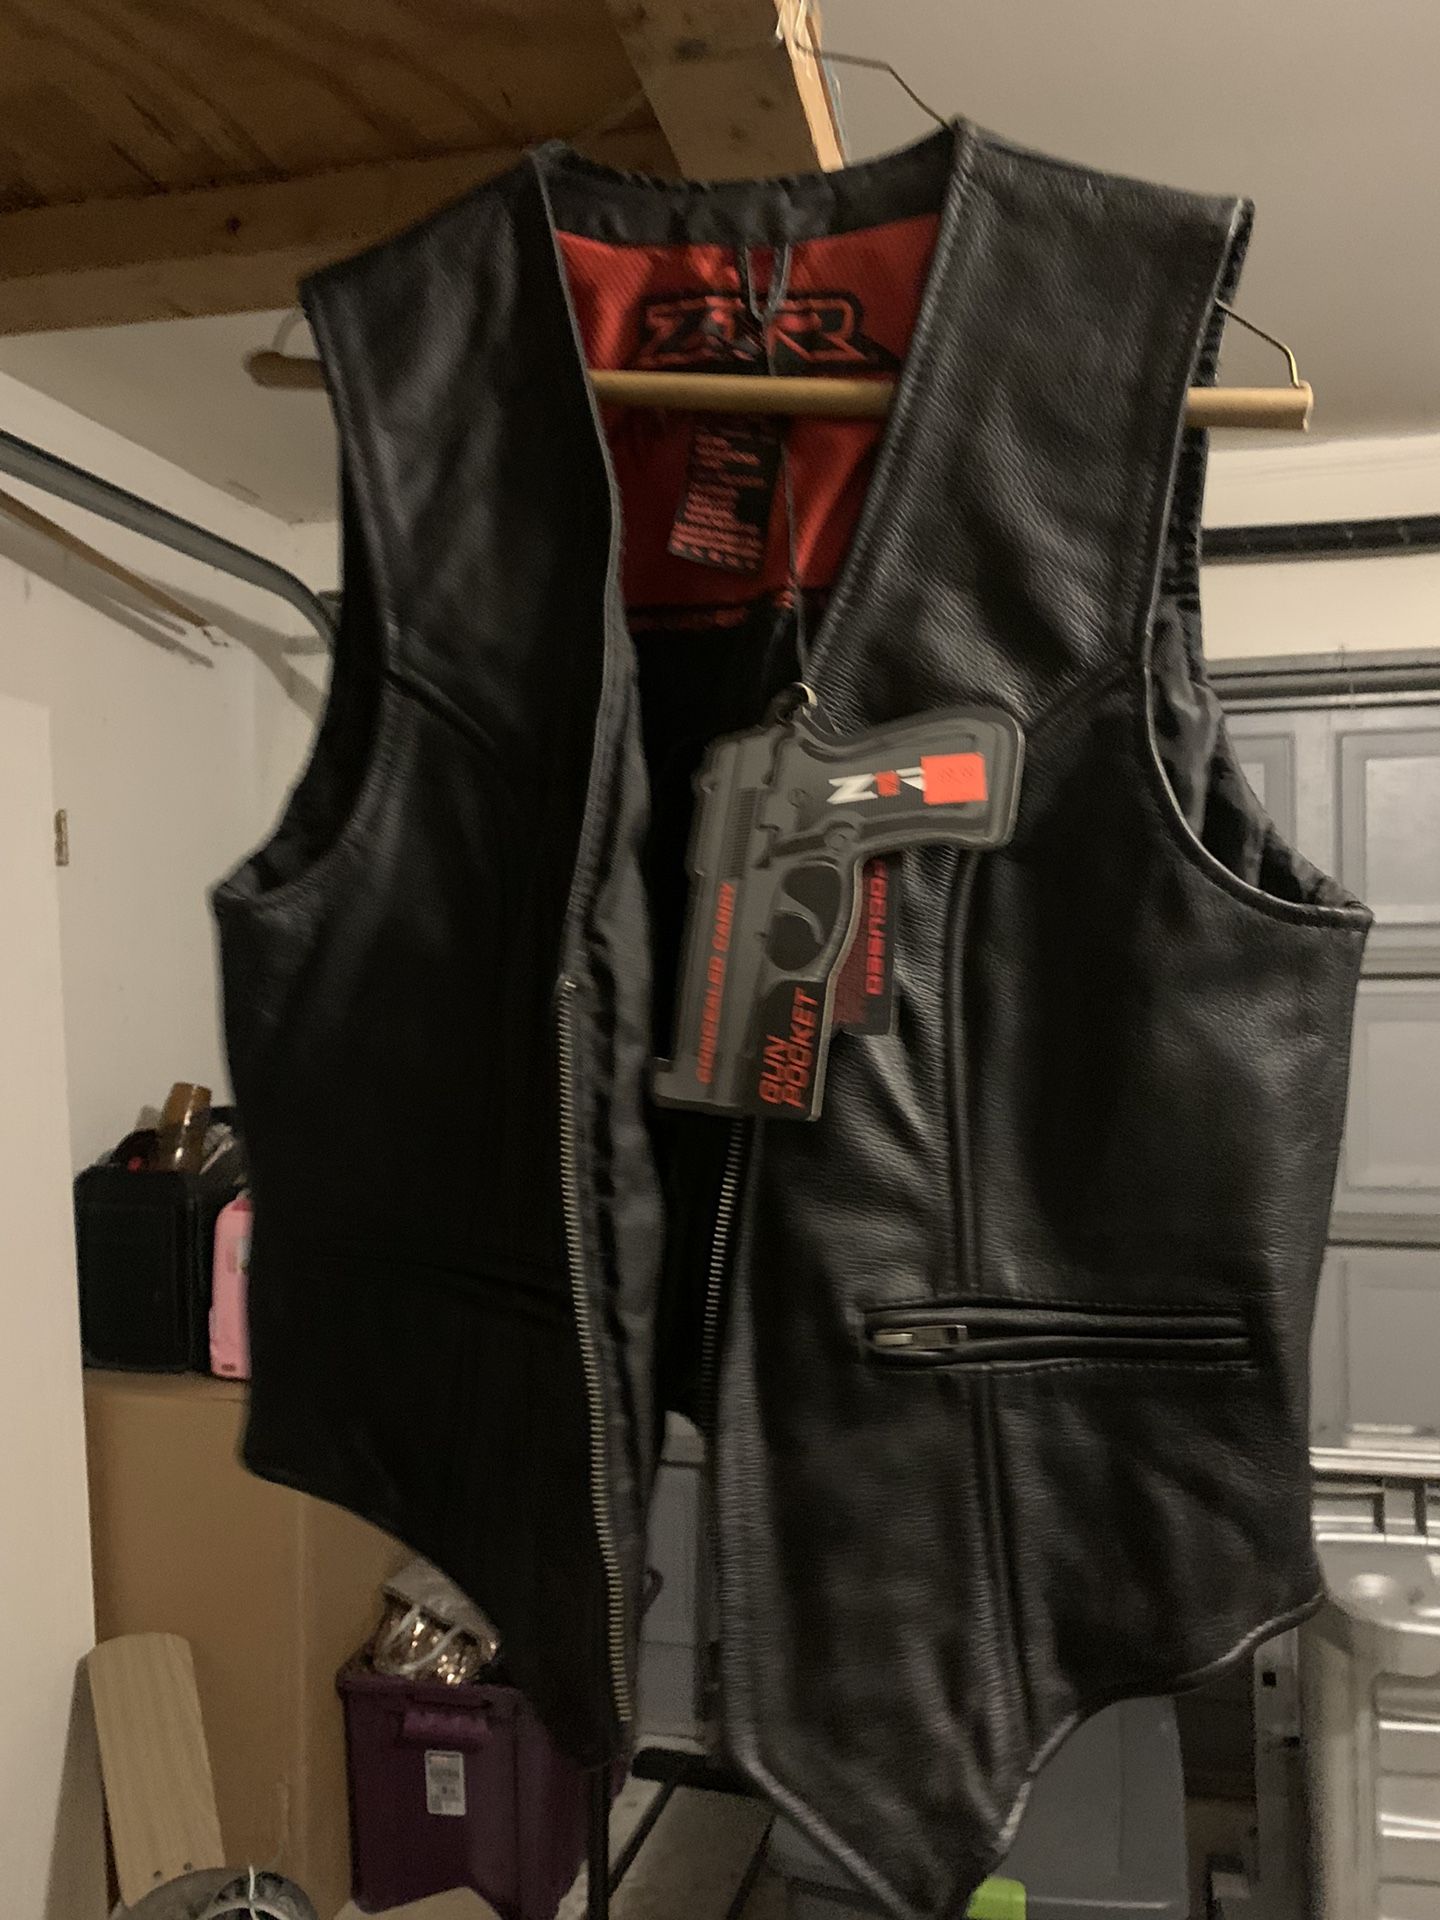 Biker Vest-Black leather 